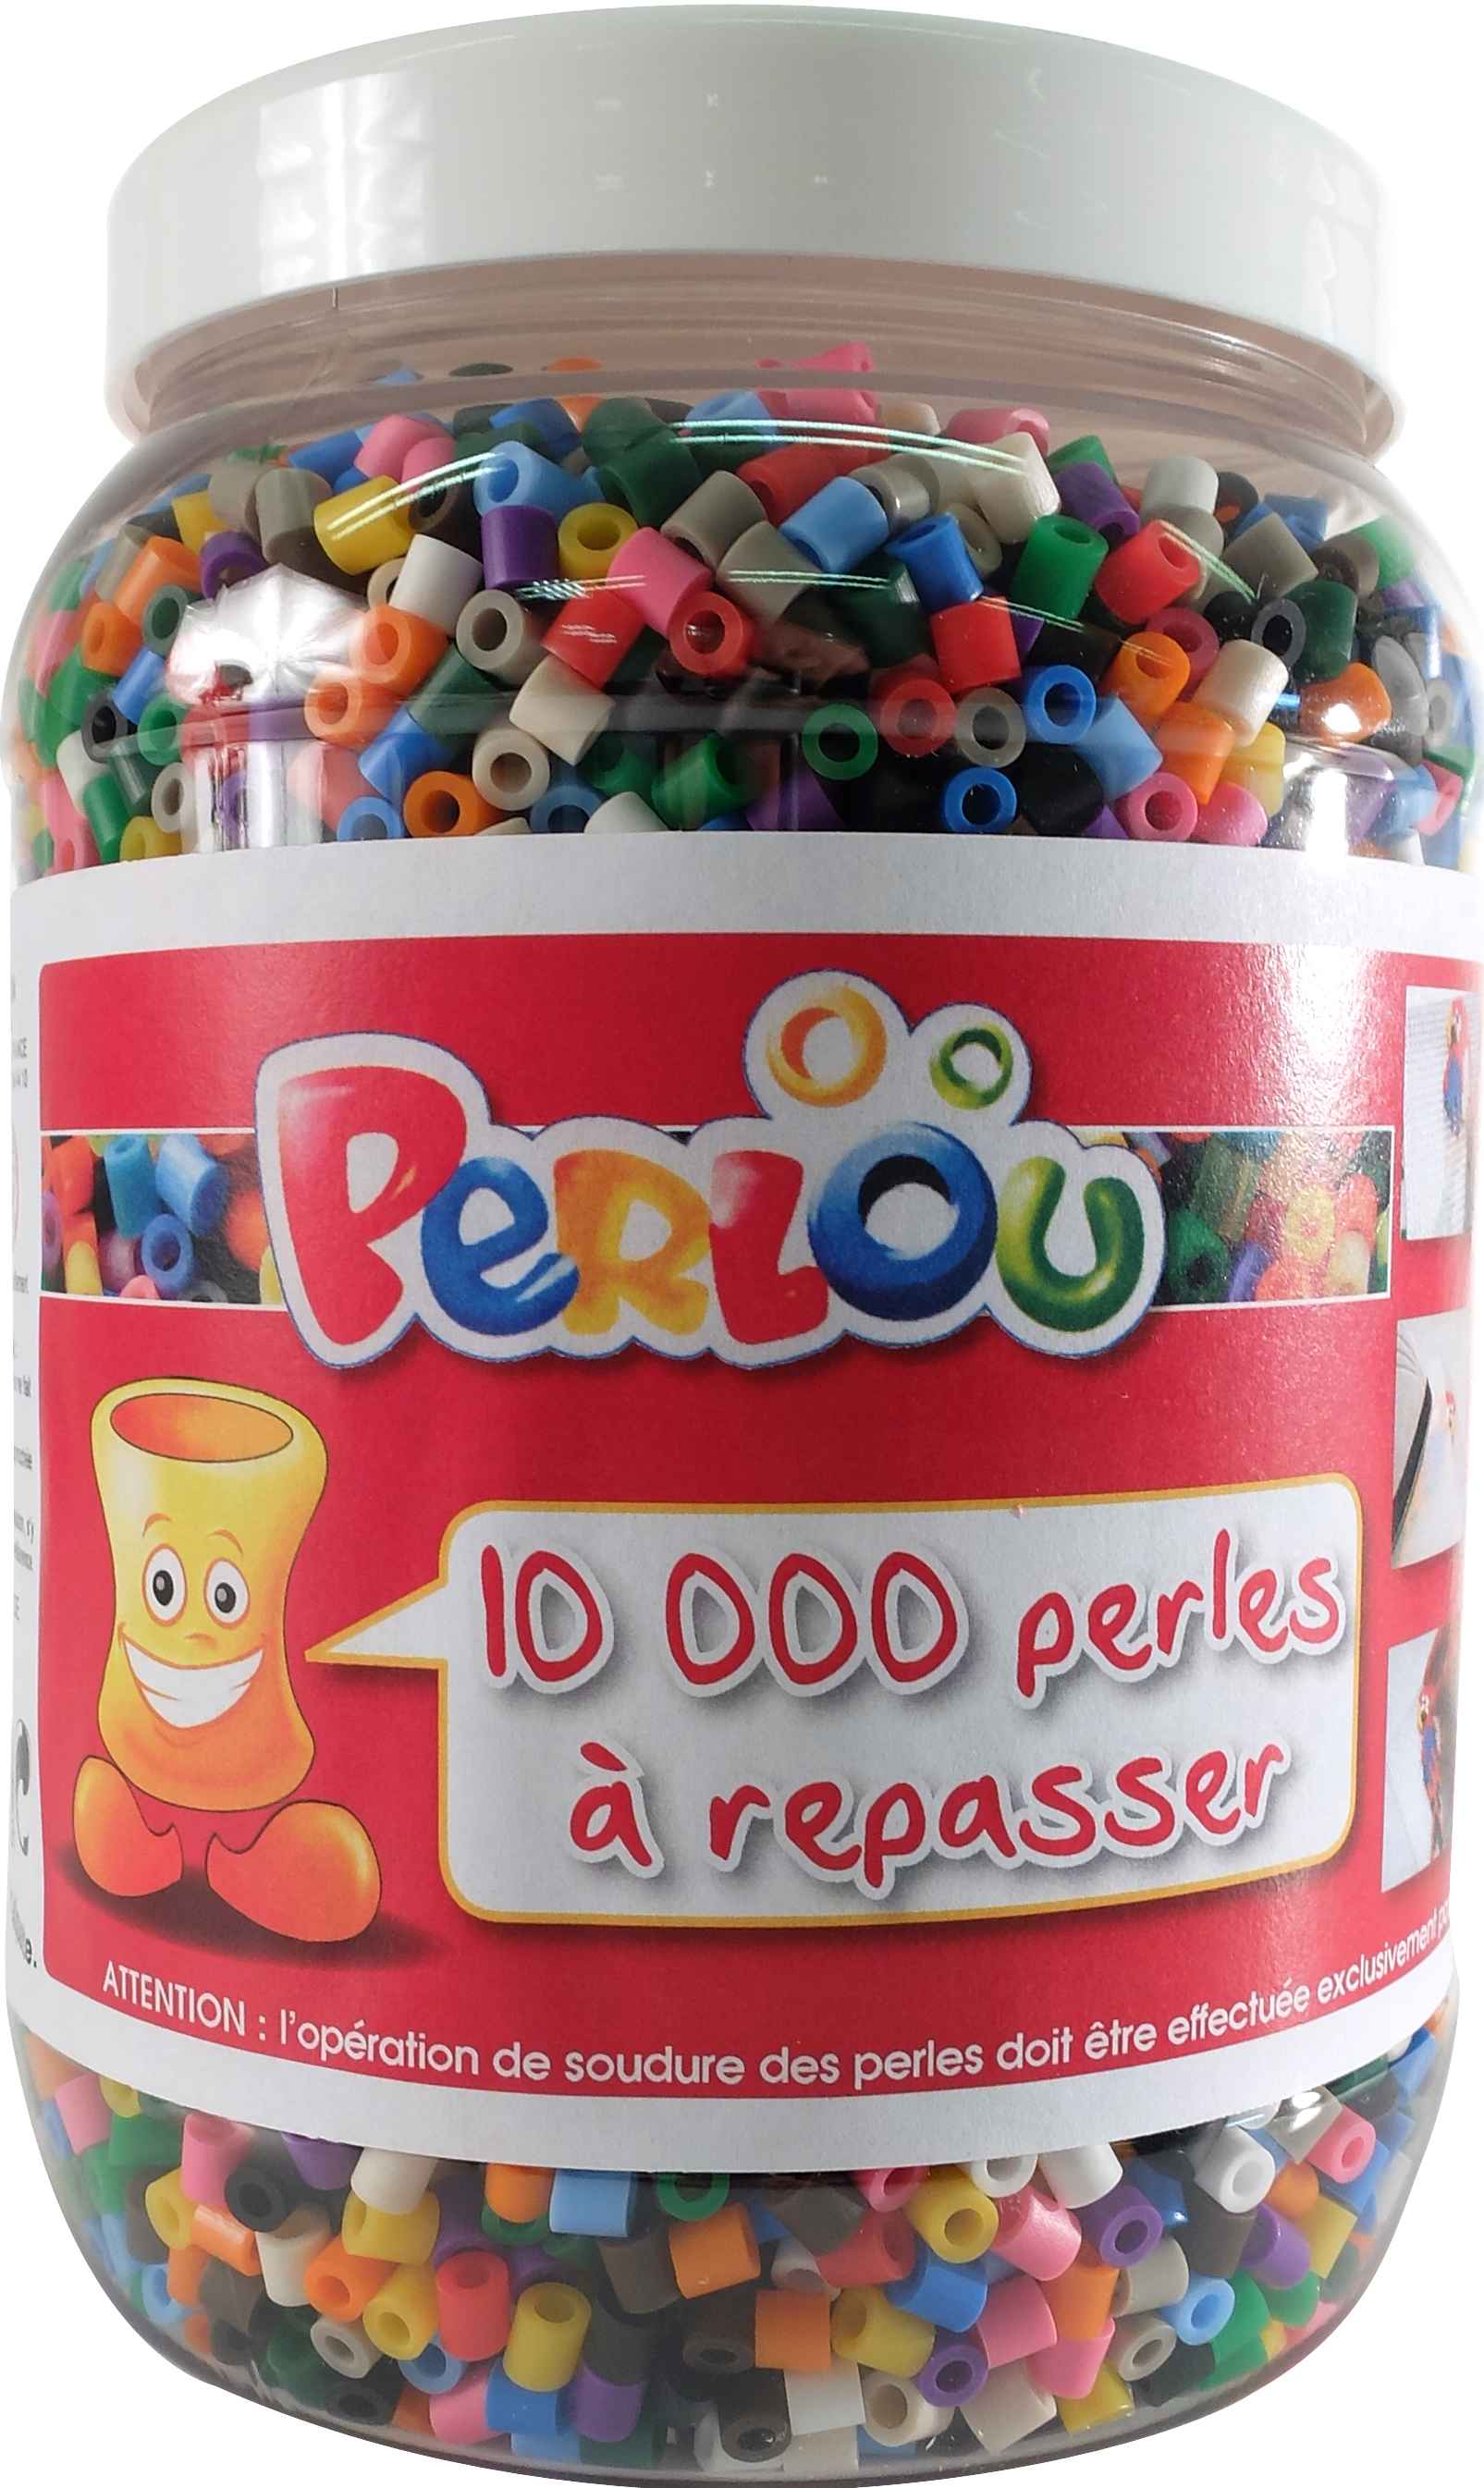 BARIL 10 000 PERLES À REPASSER